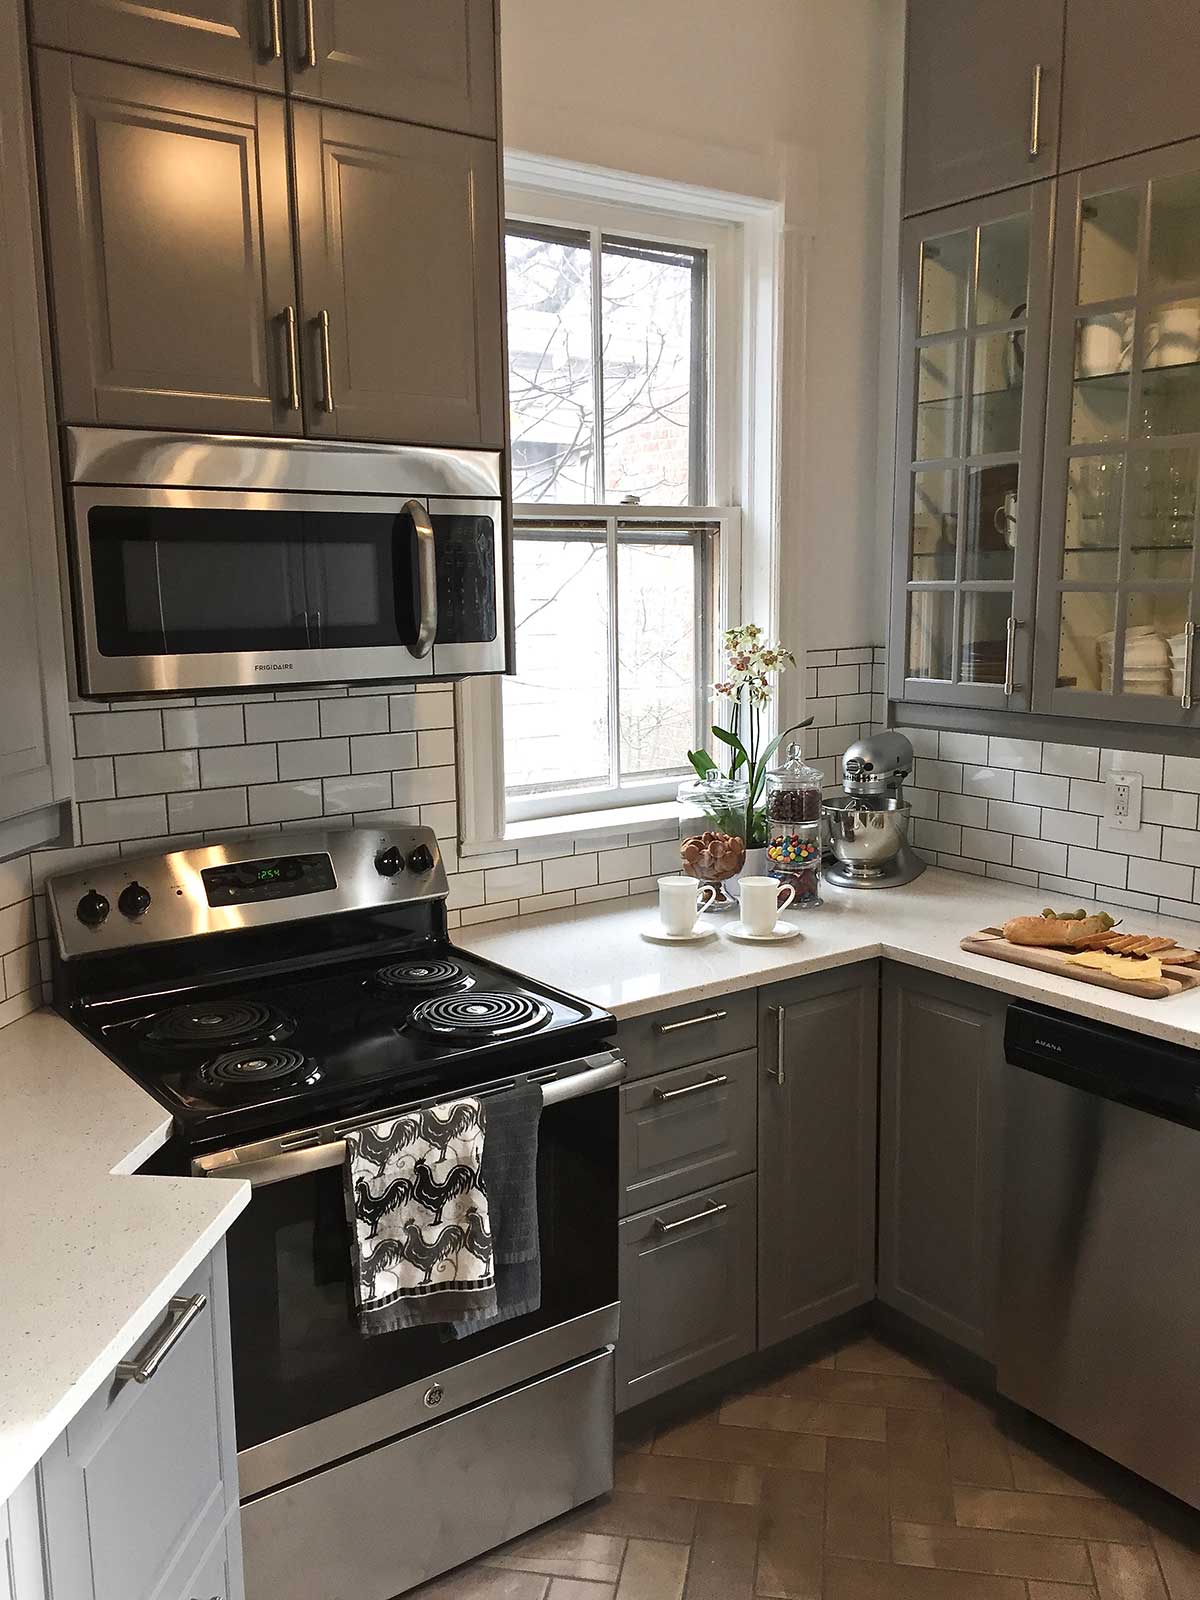 White/grey kitchen with black appliances